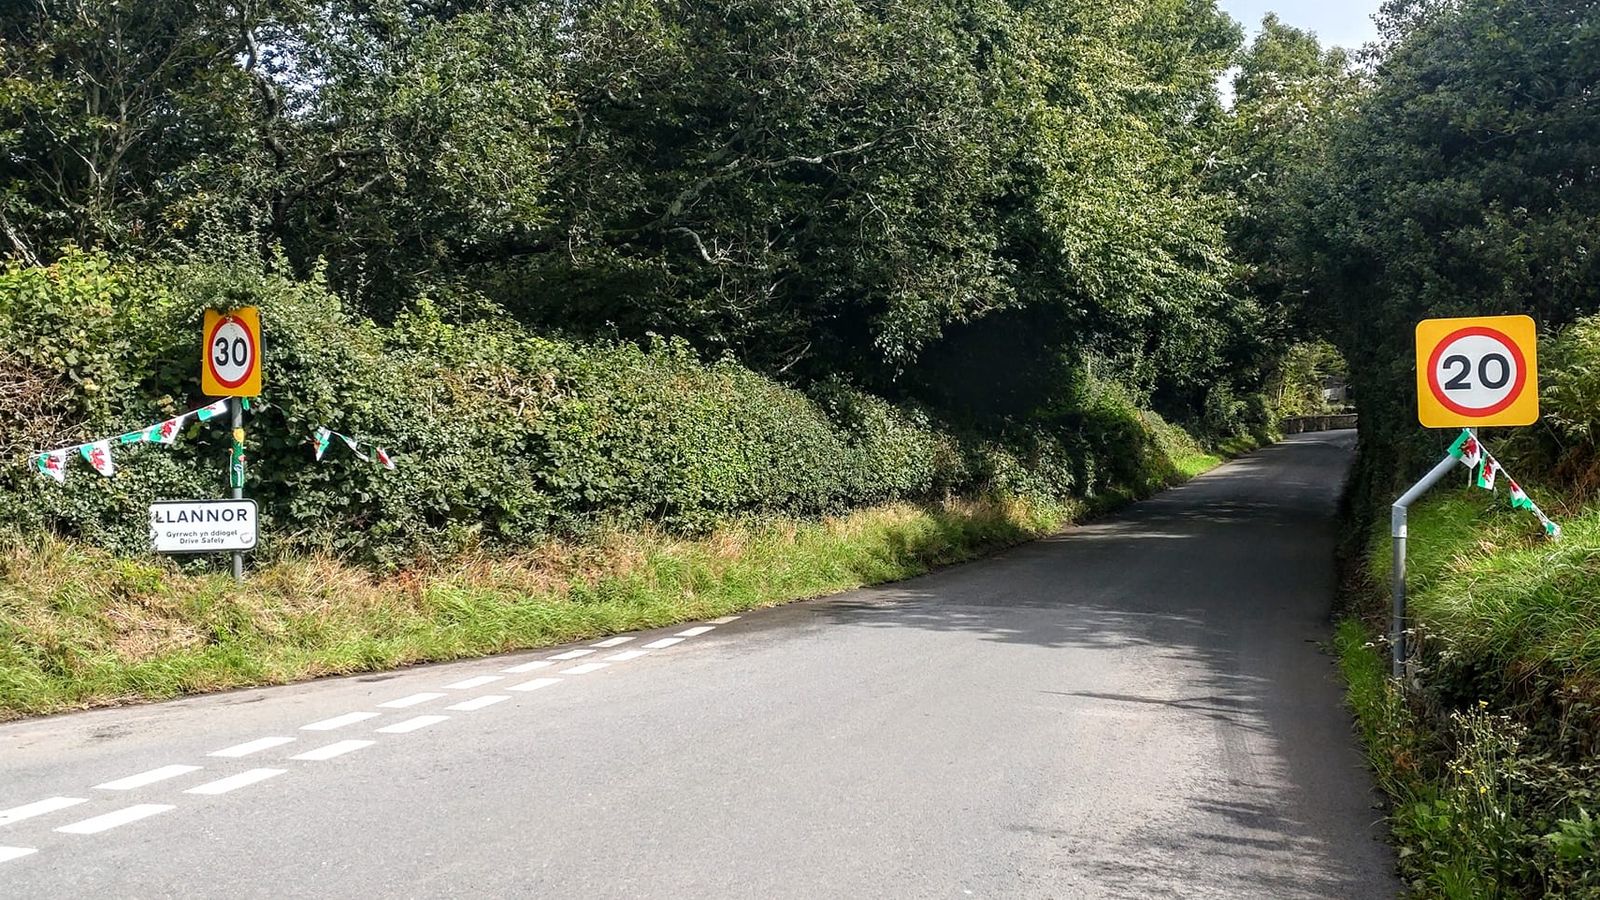 Шофьорите в северен Уелс си тръгнаха объркани, тъй като знаците определят ограничението на скоростта на пътя на 20 мили в час - и 30 мили в час